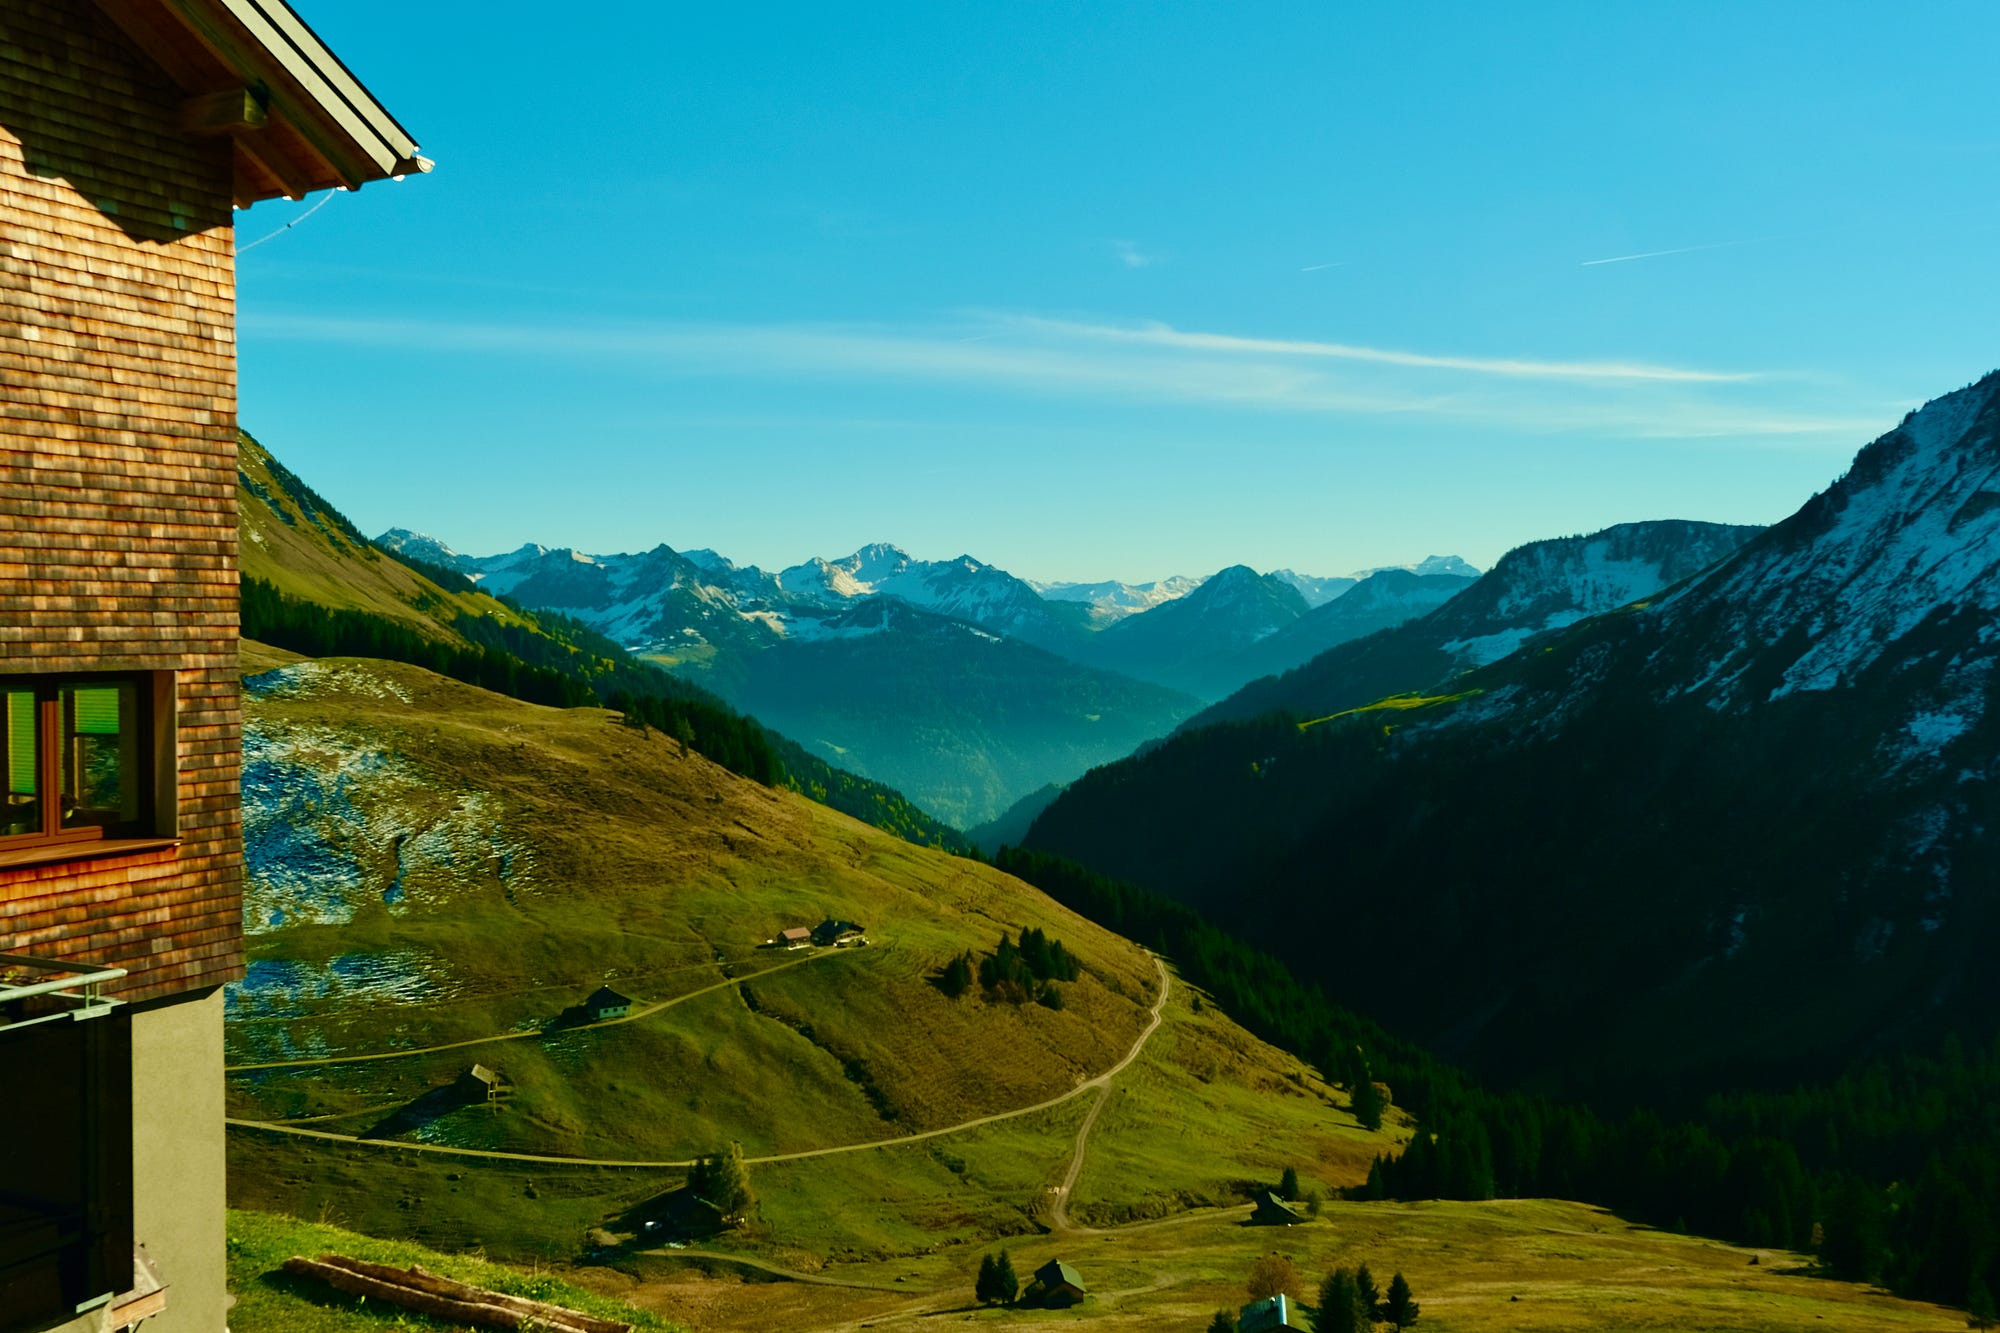 Why mountain matters — Austria mountain